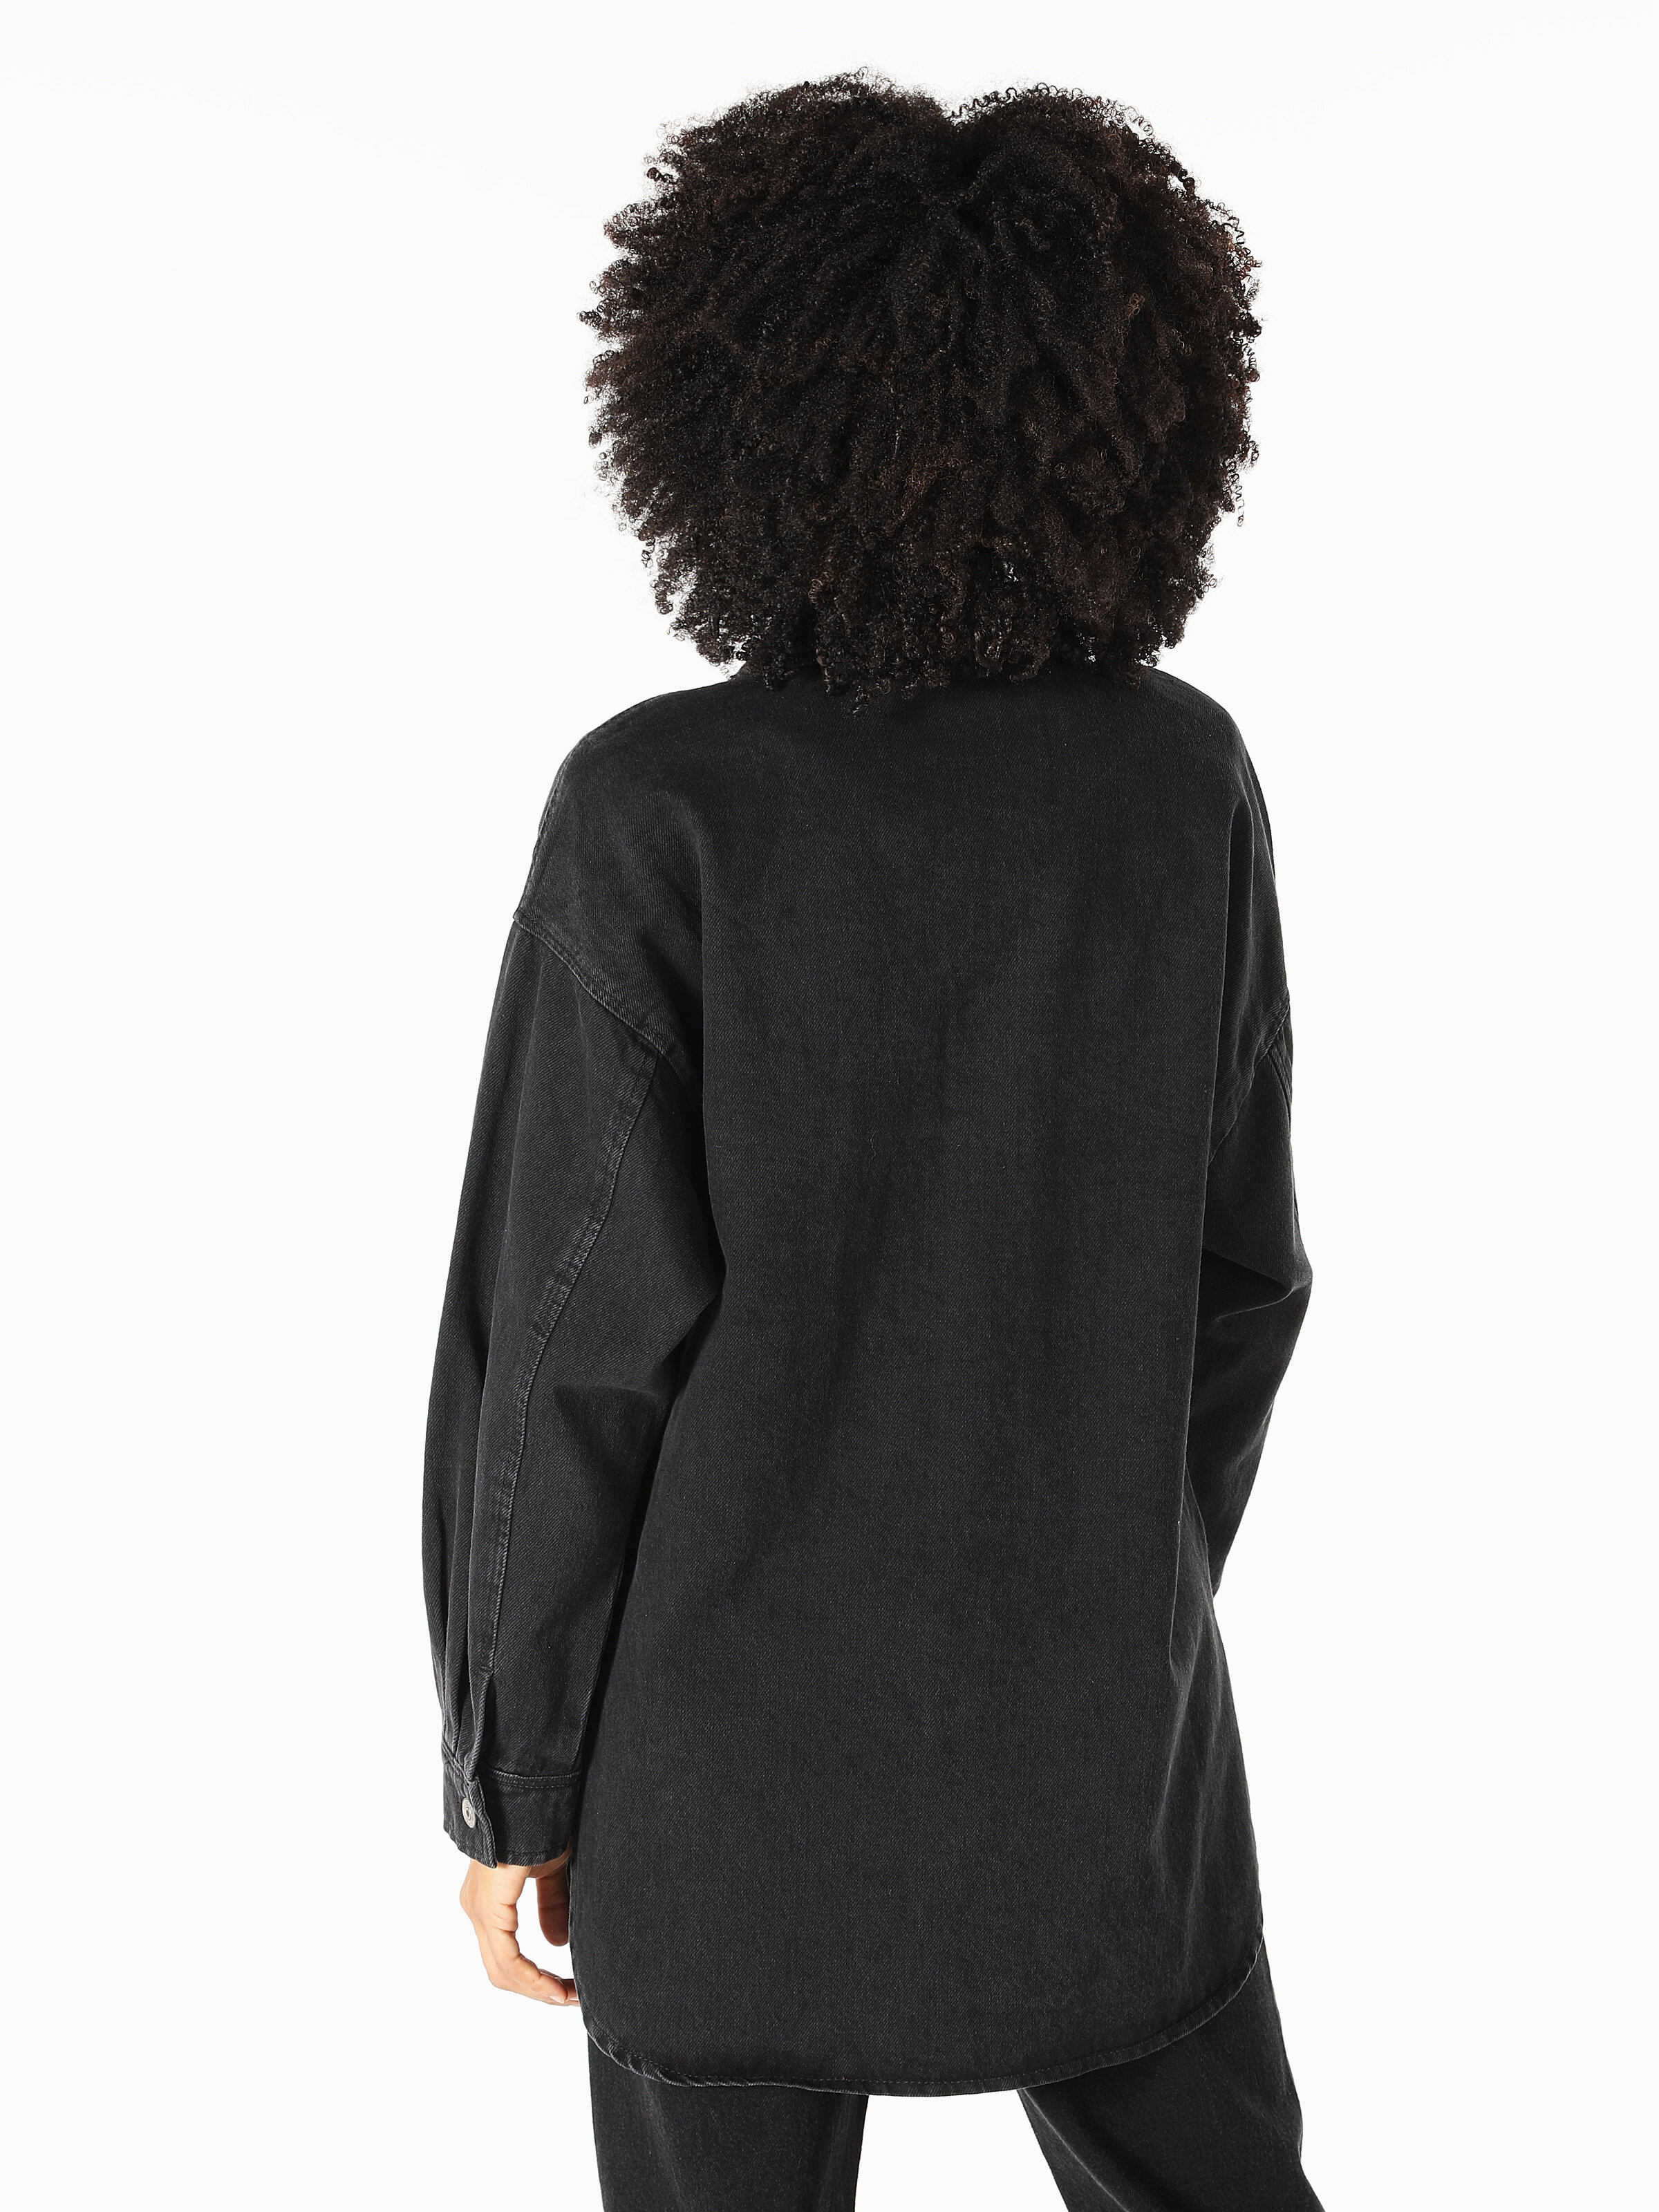 Afișați detalii pentru Camasa de blugi dama neagra cu maneca lunga